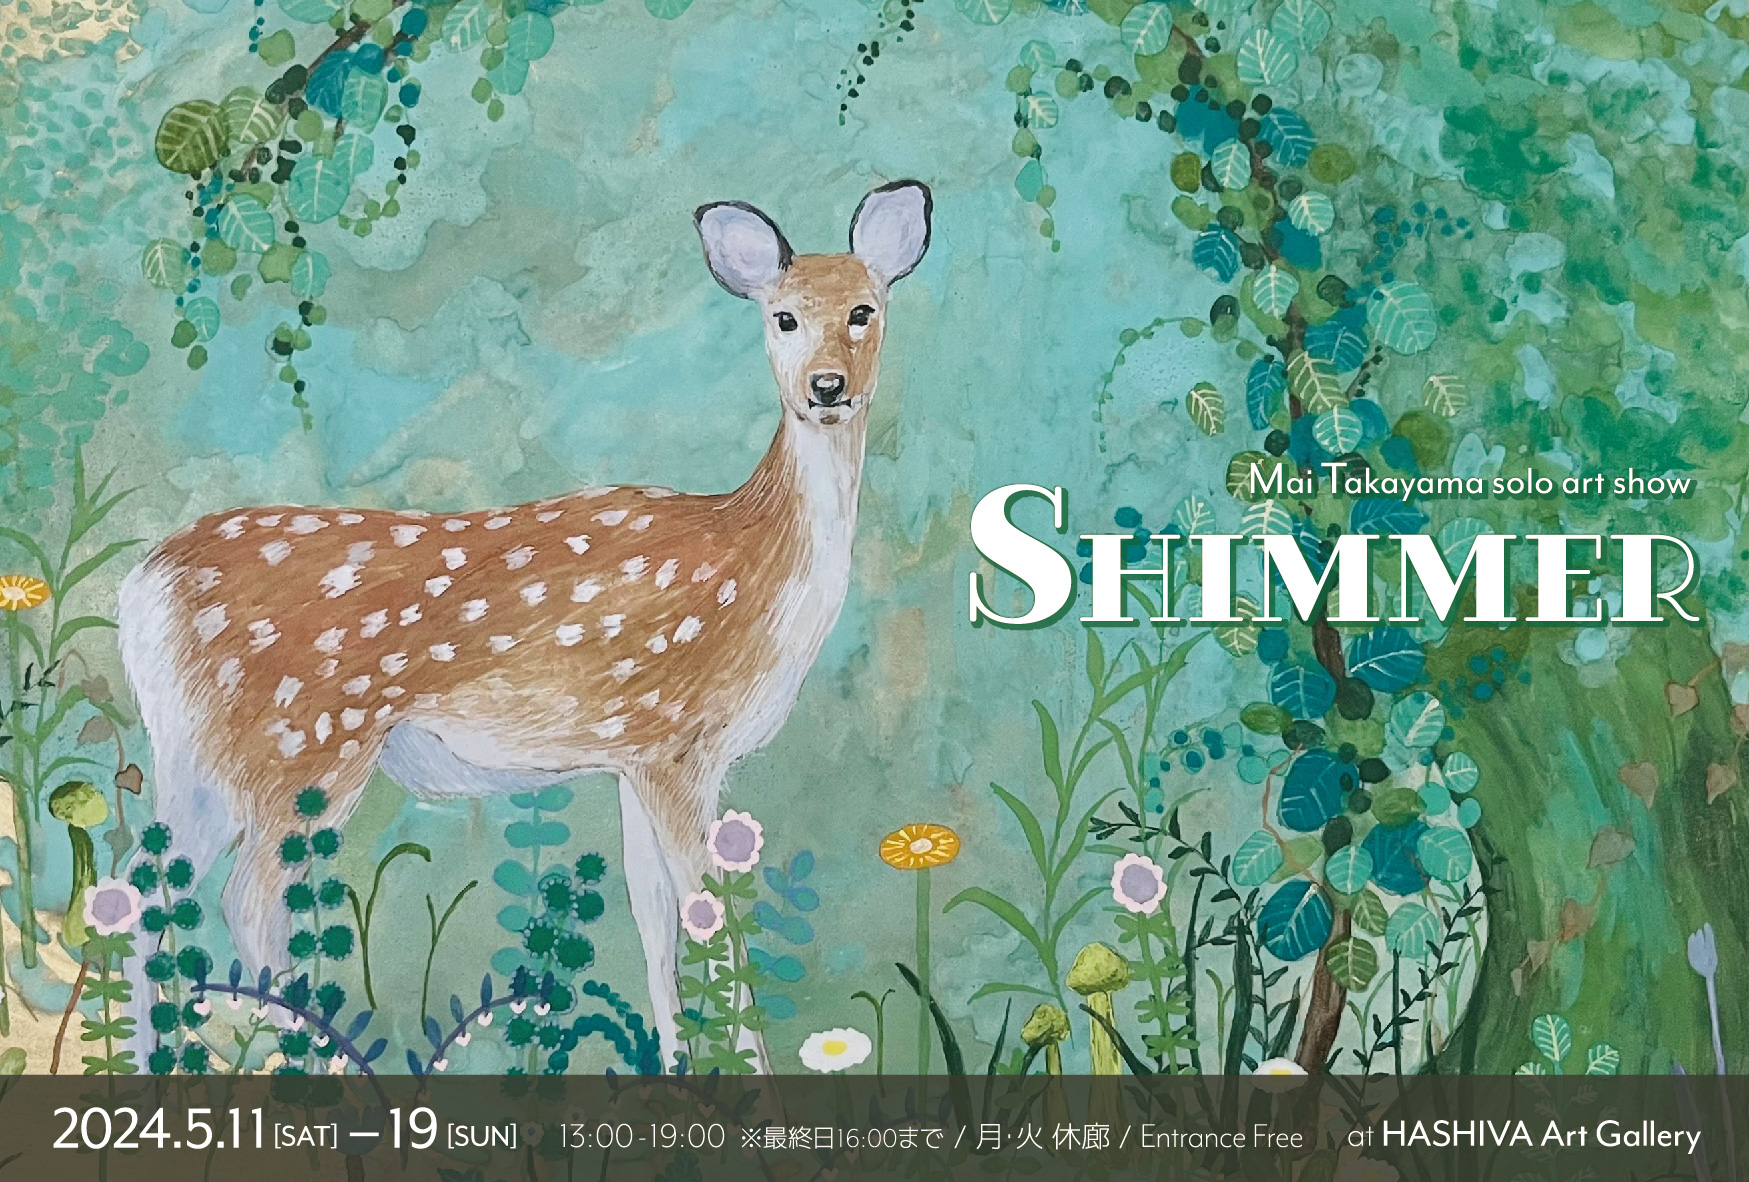 髙山真衣の展示会「SHIMMER」のポスター